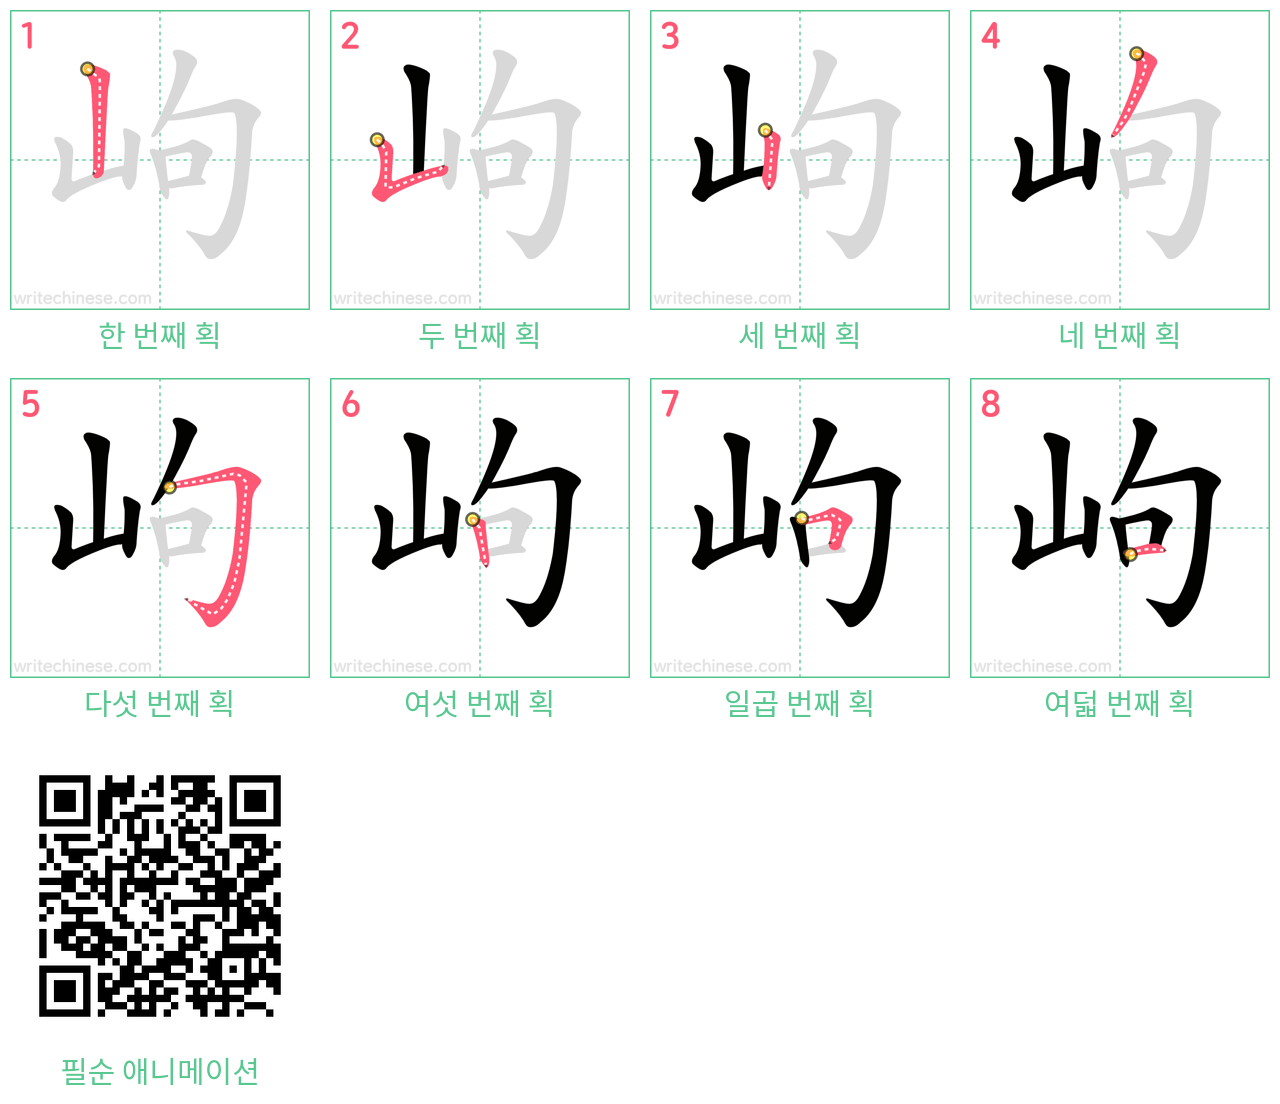 岣 step-by-step stroke order diagrams